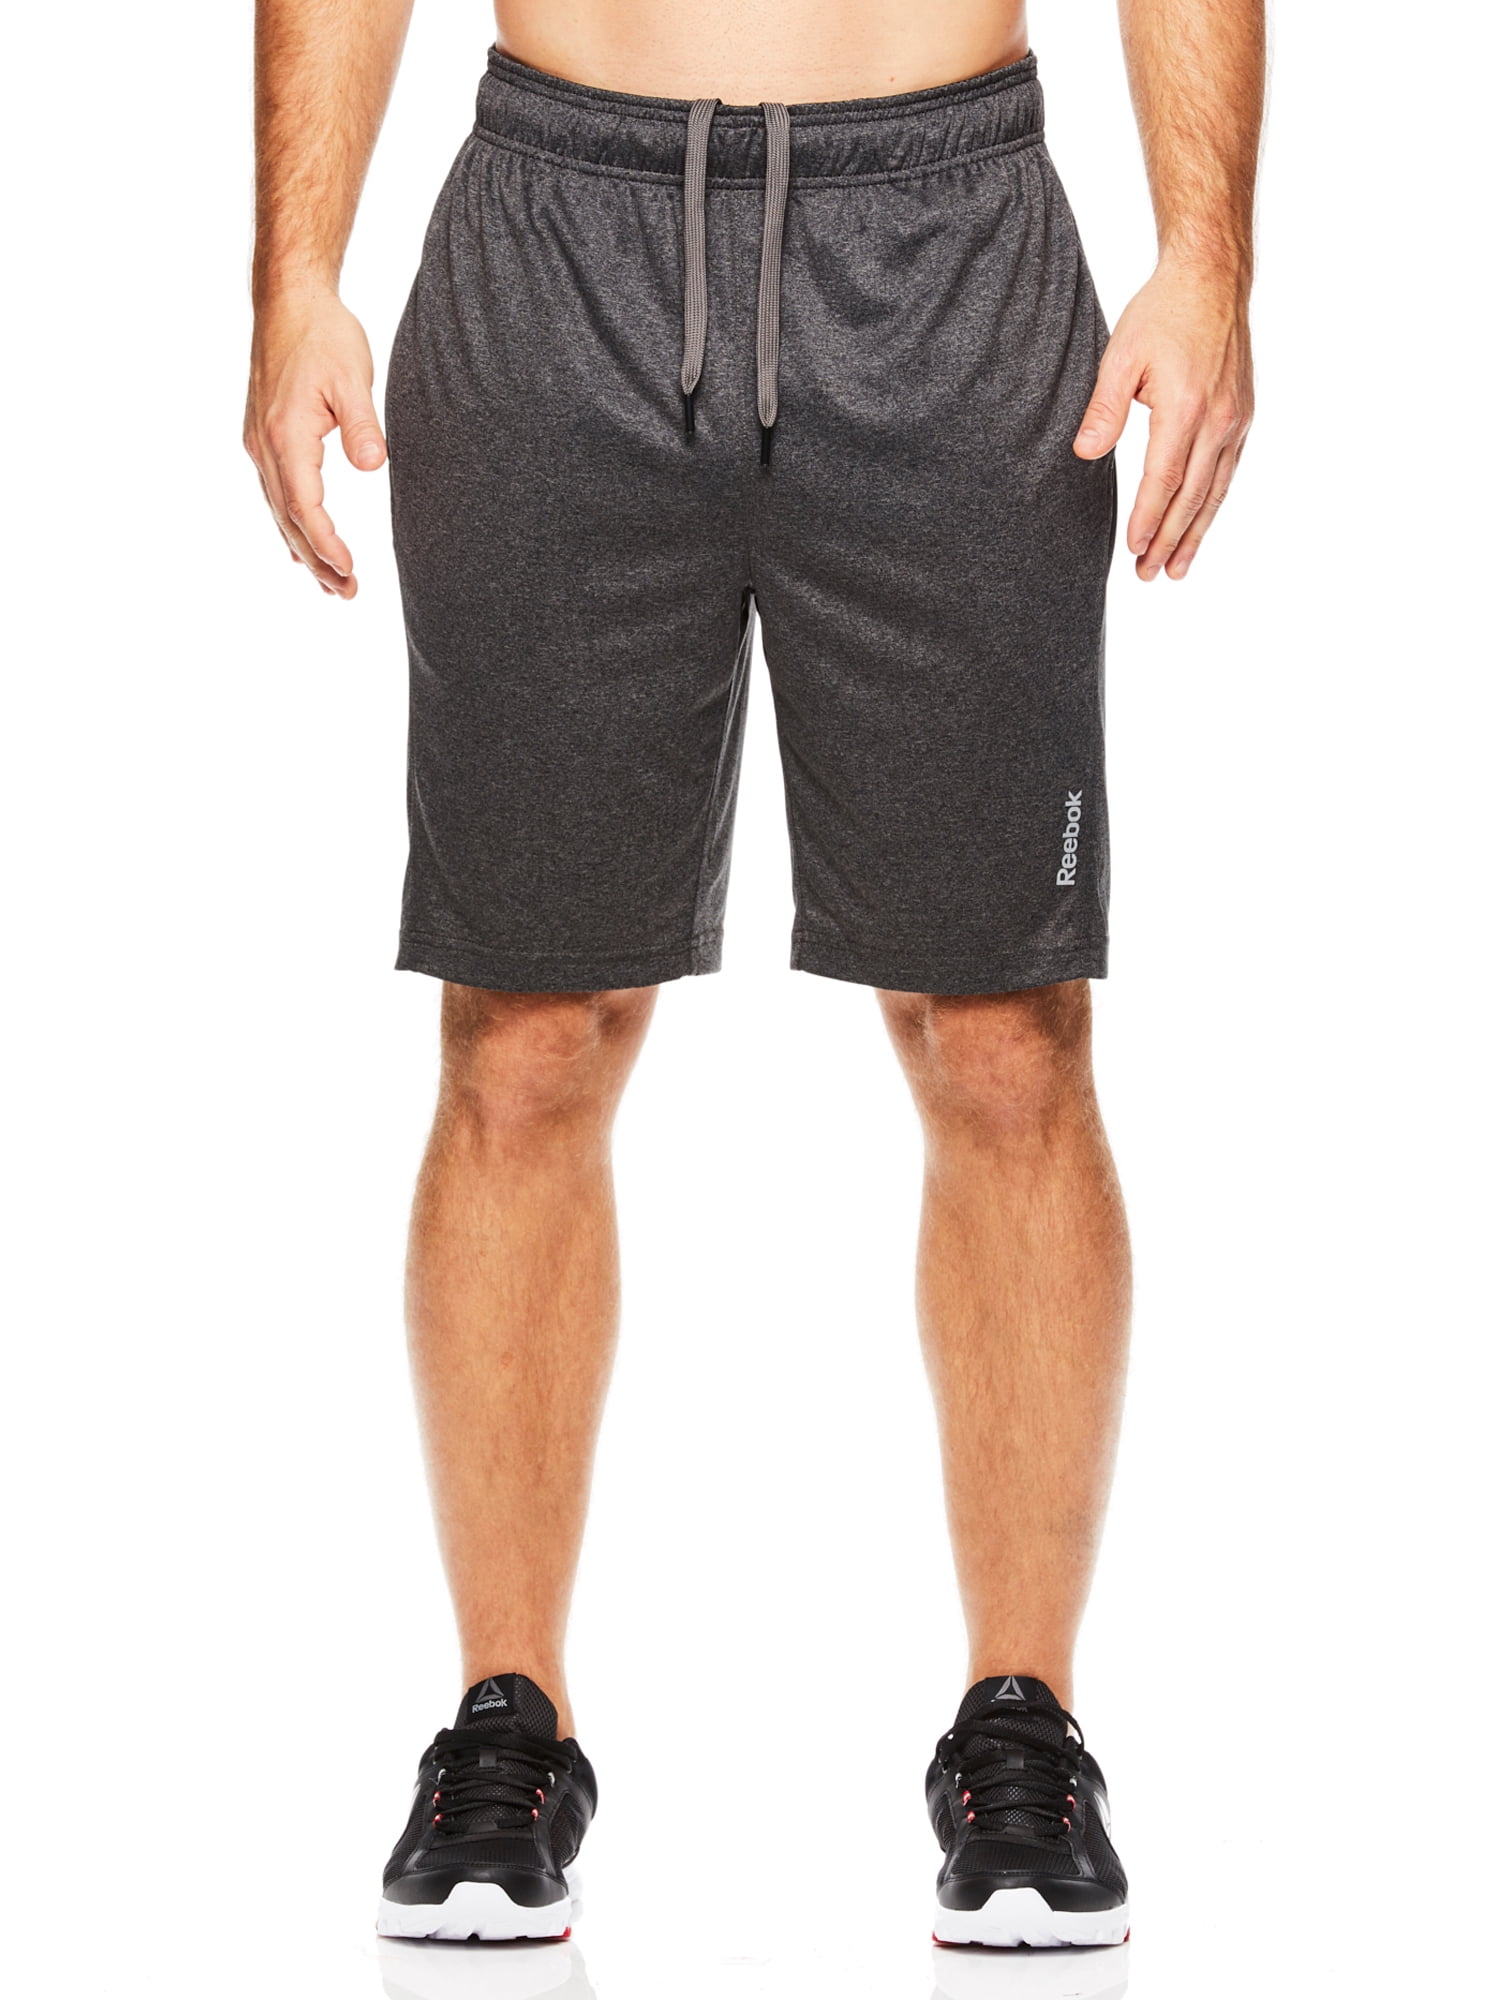 Reebok Men's Fireball Shorts - Walmart.com